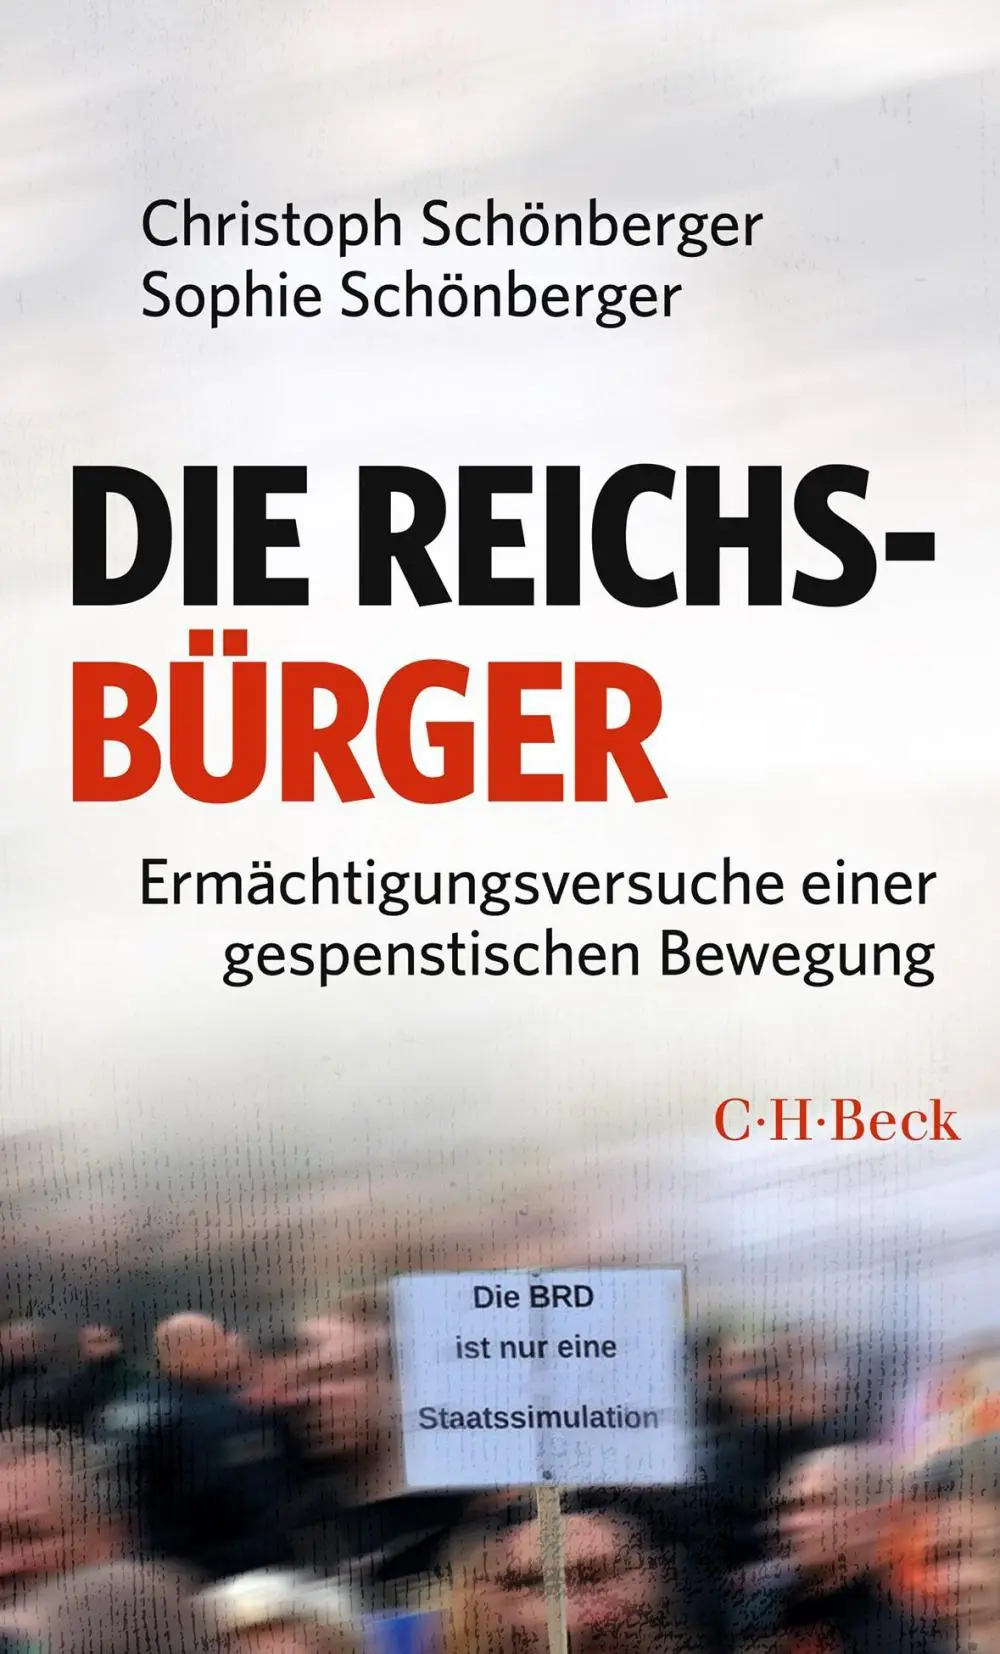 Buchcover: Christoph und Sophie Schönberger - Die Reichsbürger